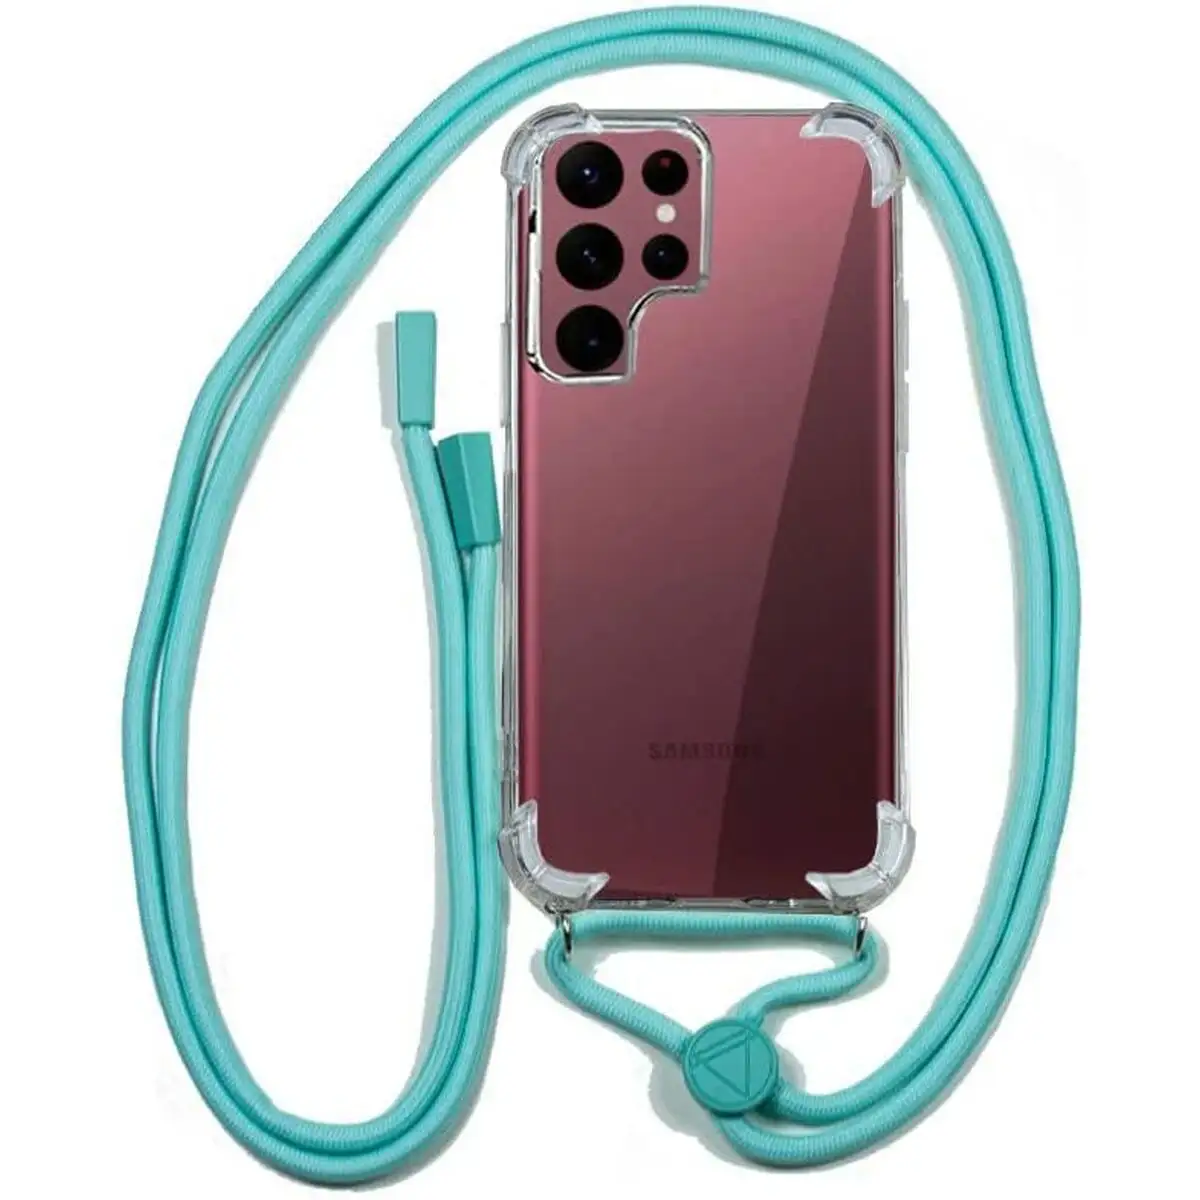 Protection pour telephone portable cool cord mint samsung galaxy s22 ultra_7472. Bienvenue chez DIAYTAR SENEGAL - Où le Shopping Rencontre la Qualité. Explorez notre sélection soigneusement conçue et trouvez des produits qui définissent le luxe abordable.